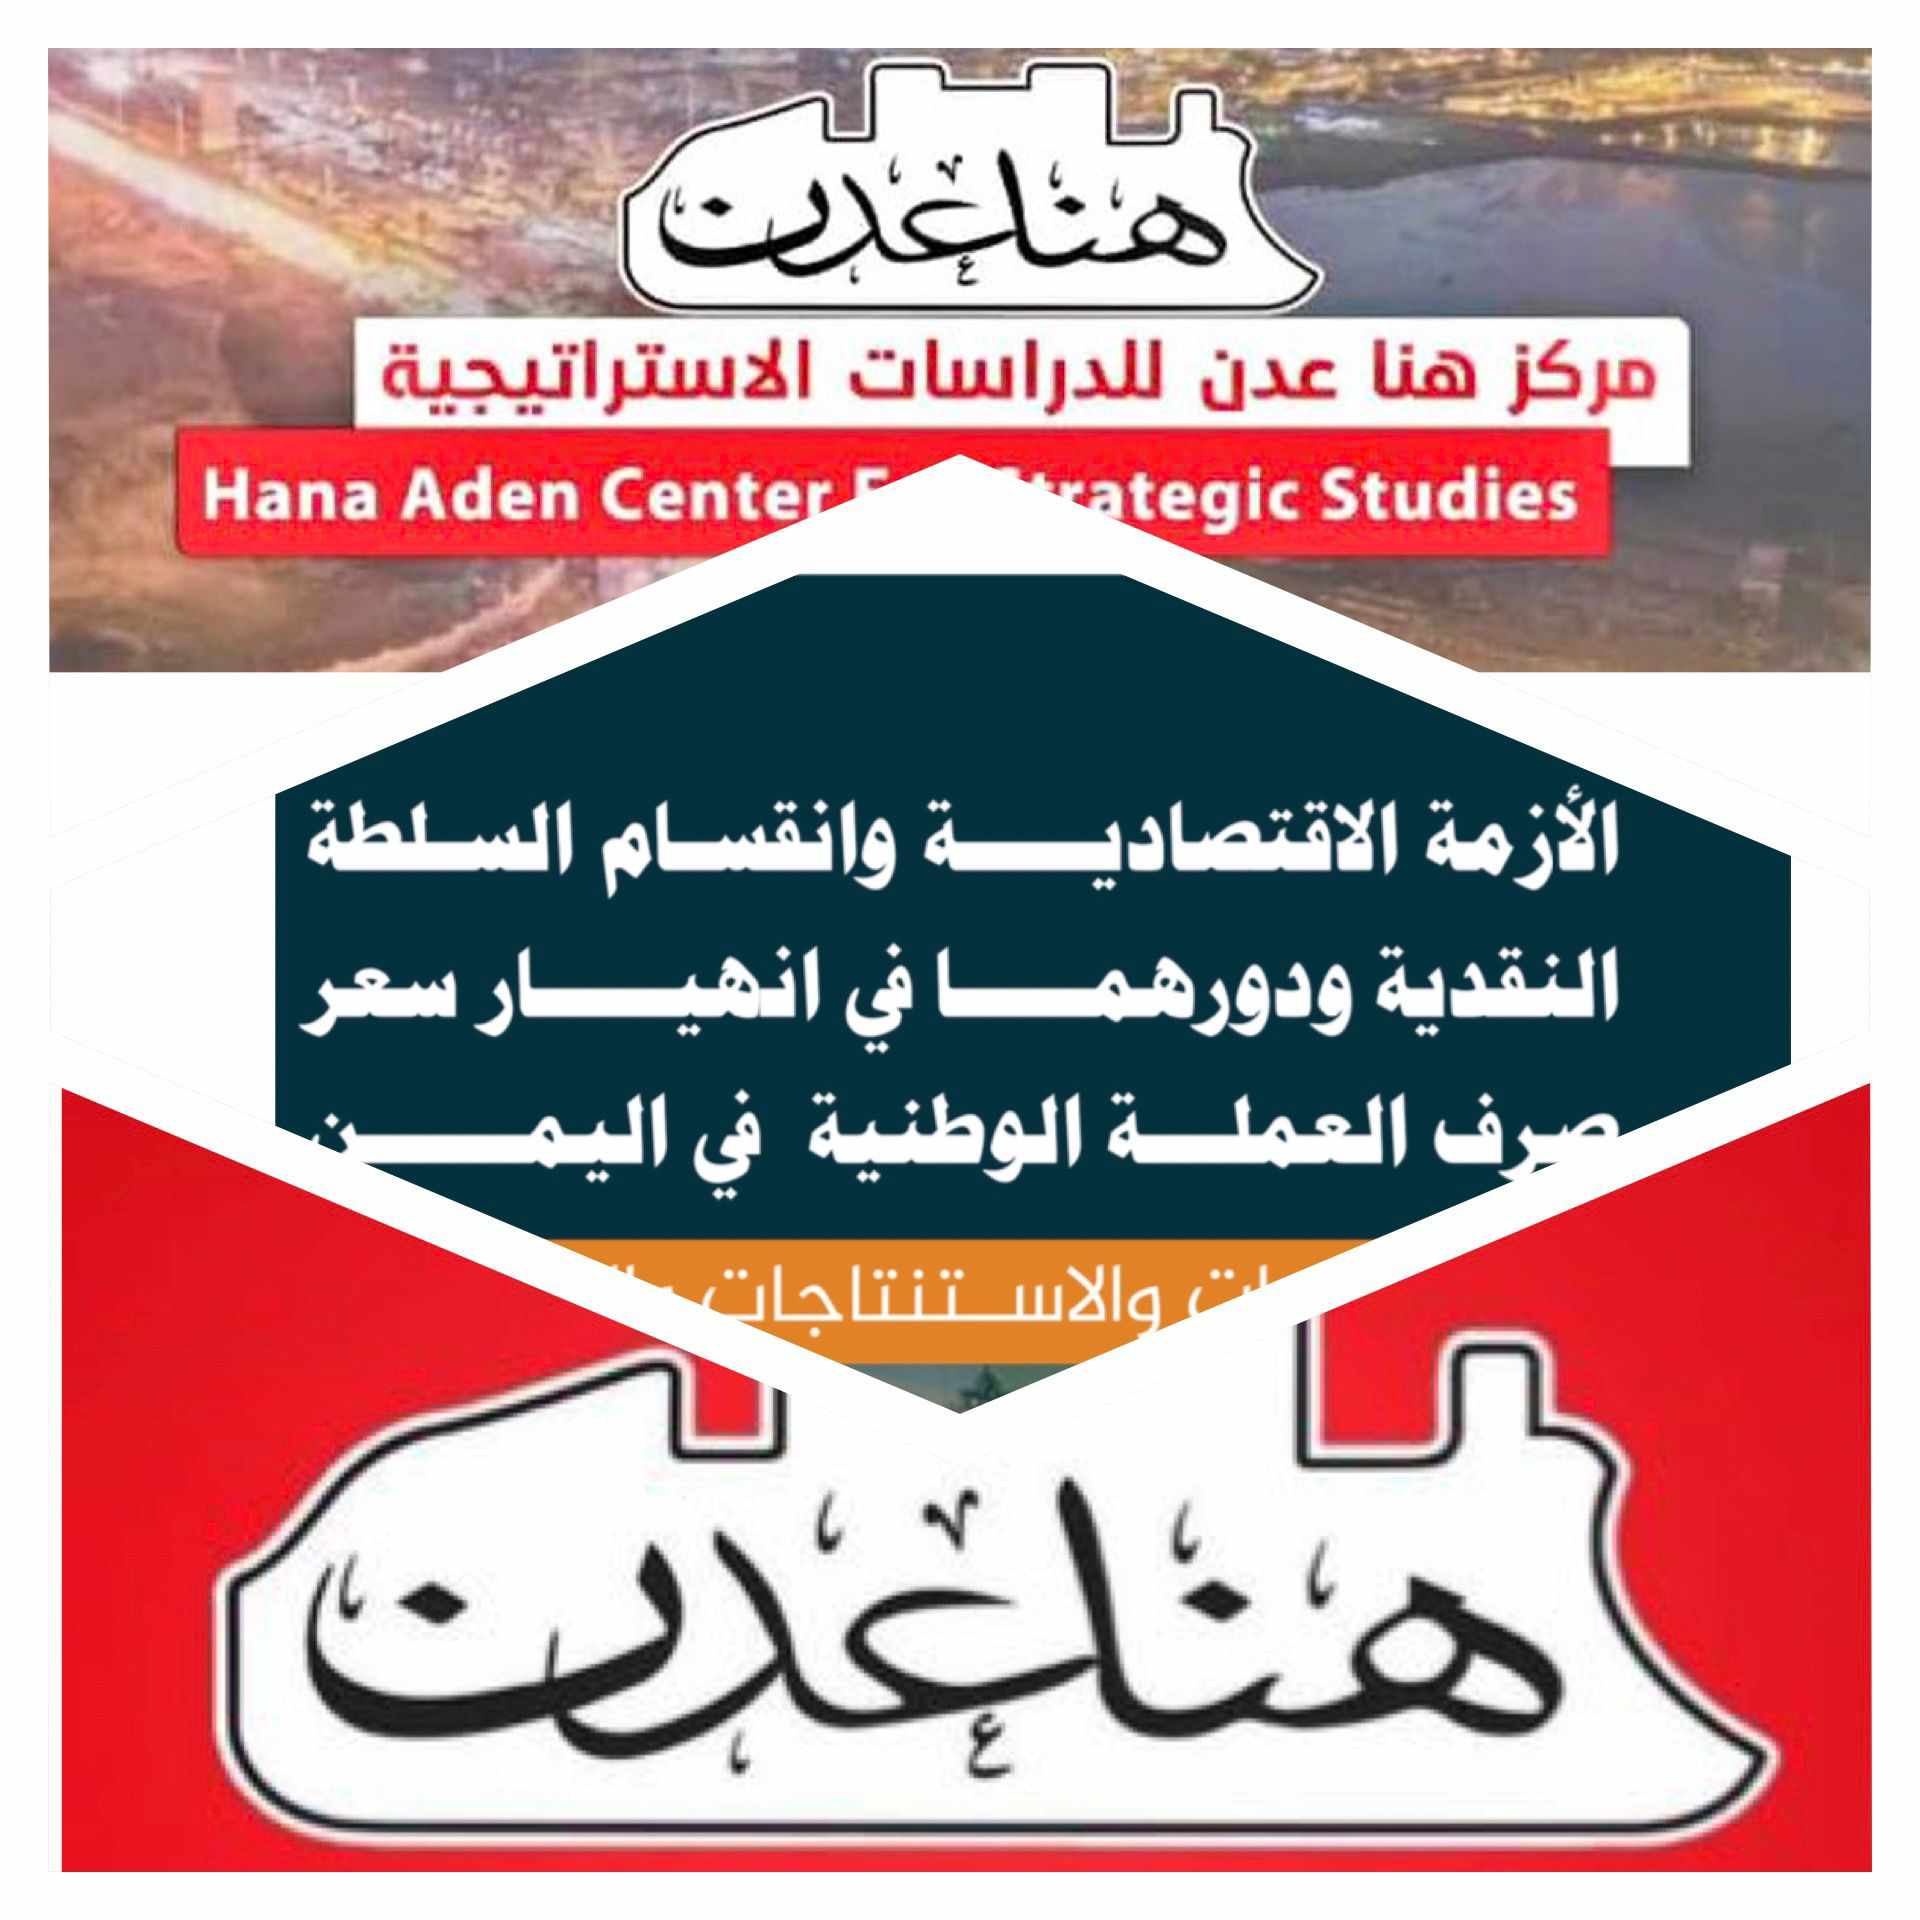 تقرير جديد لمركز "هنا عدن" حول الأزمة الاقتصادية والانقسام المالي في اليمن.. نقاط على الحروف